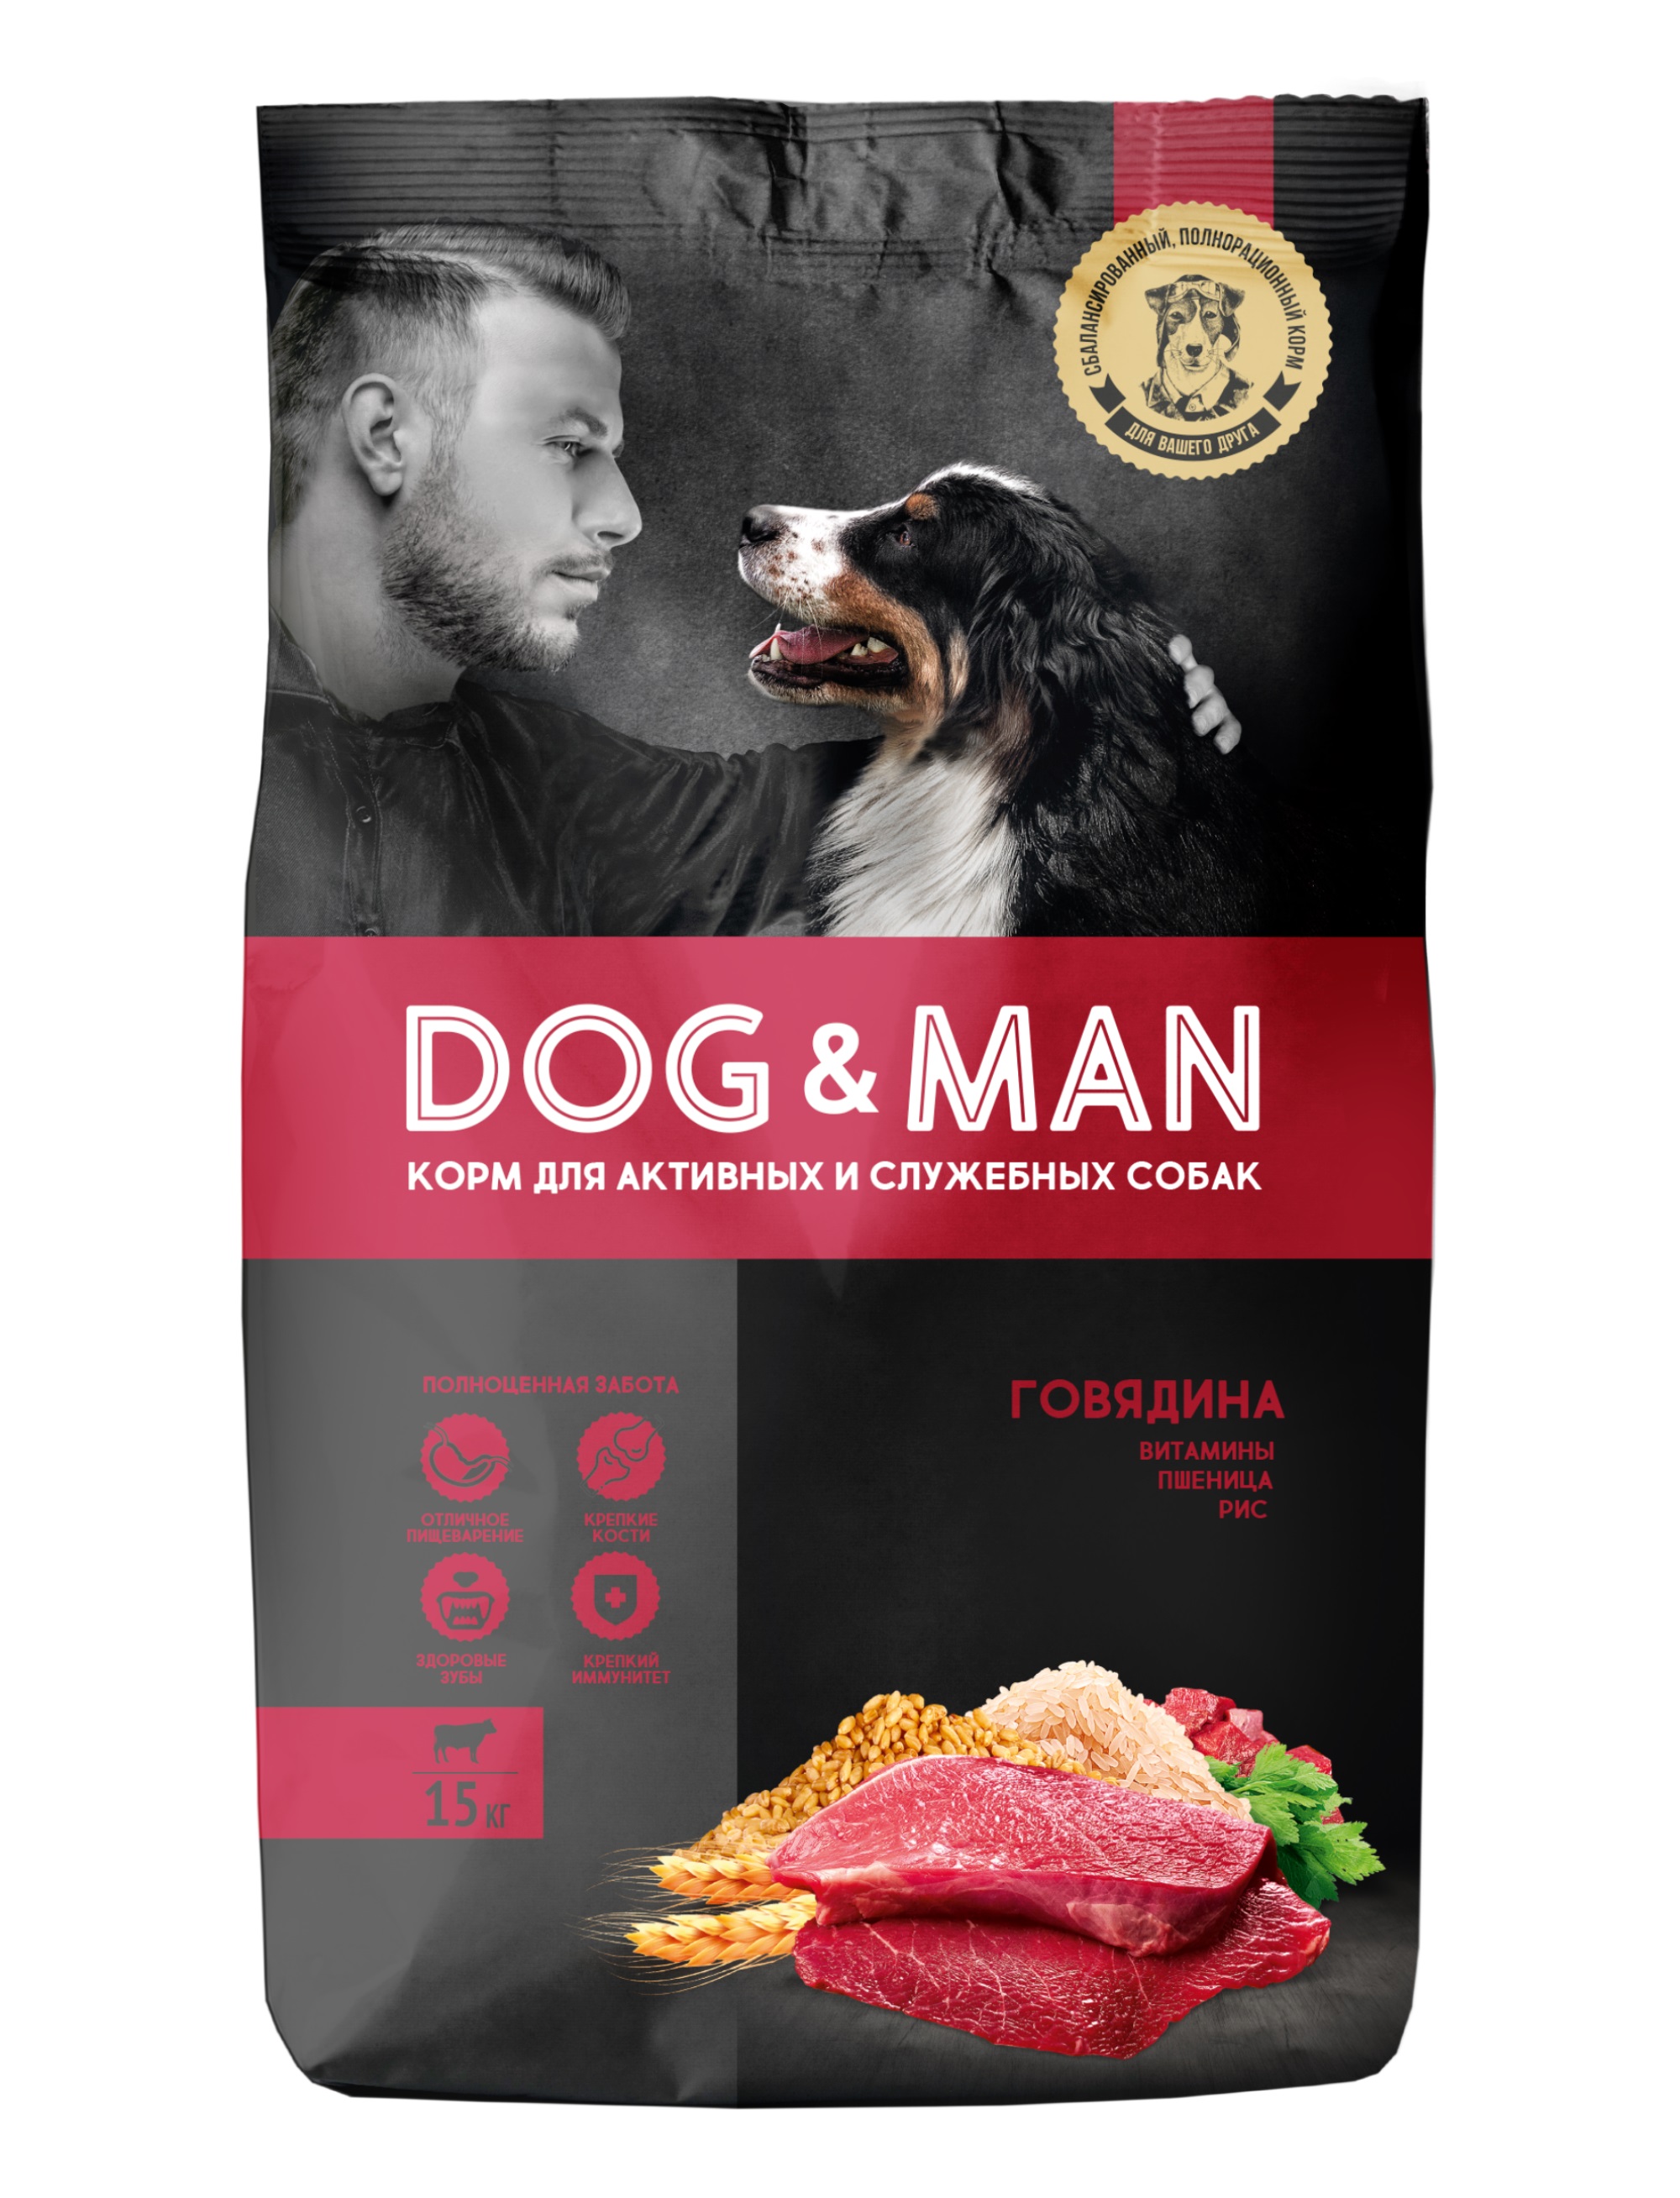 Сухой корм для собак Dog&Man для активных и служебных собак, говядина, 15.15кг